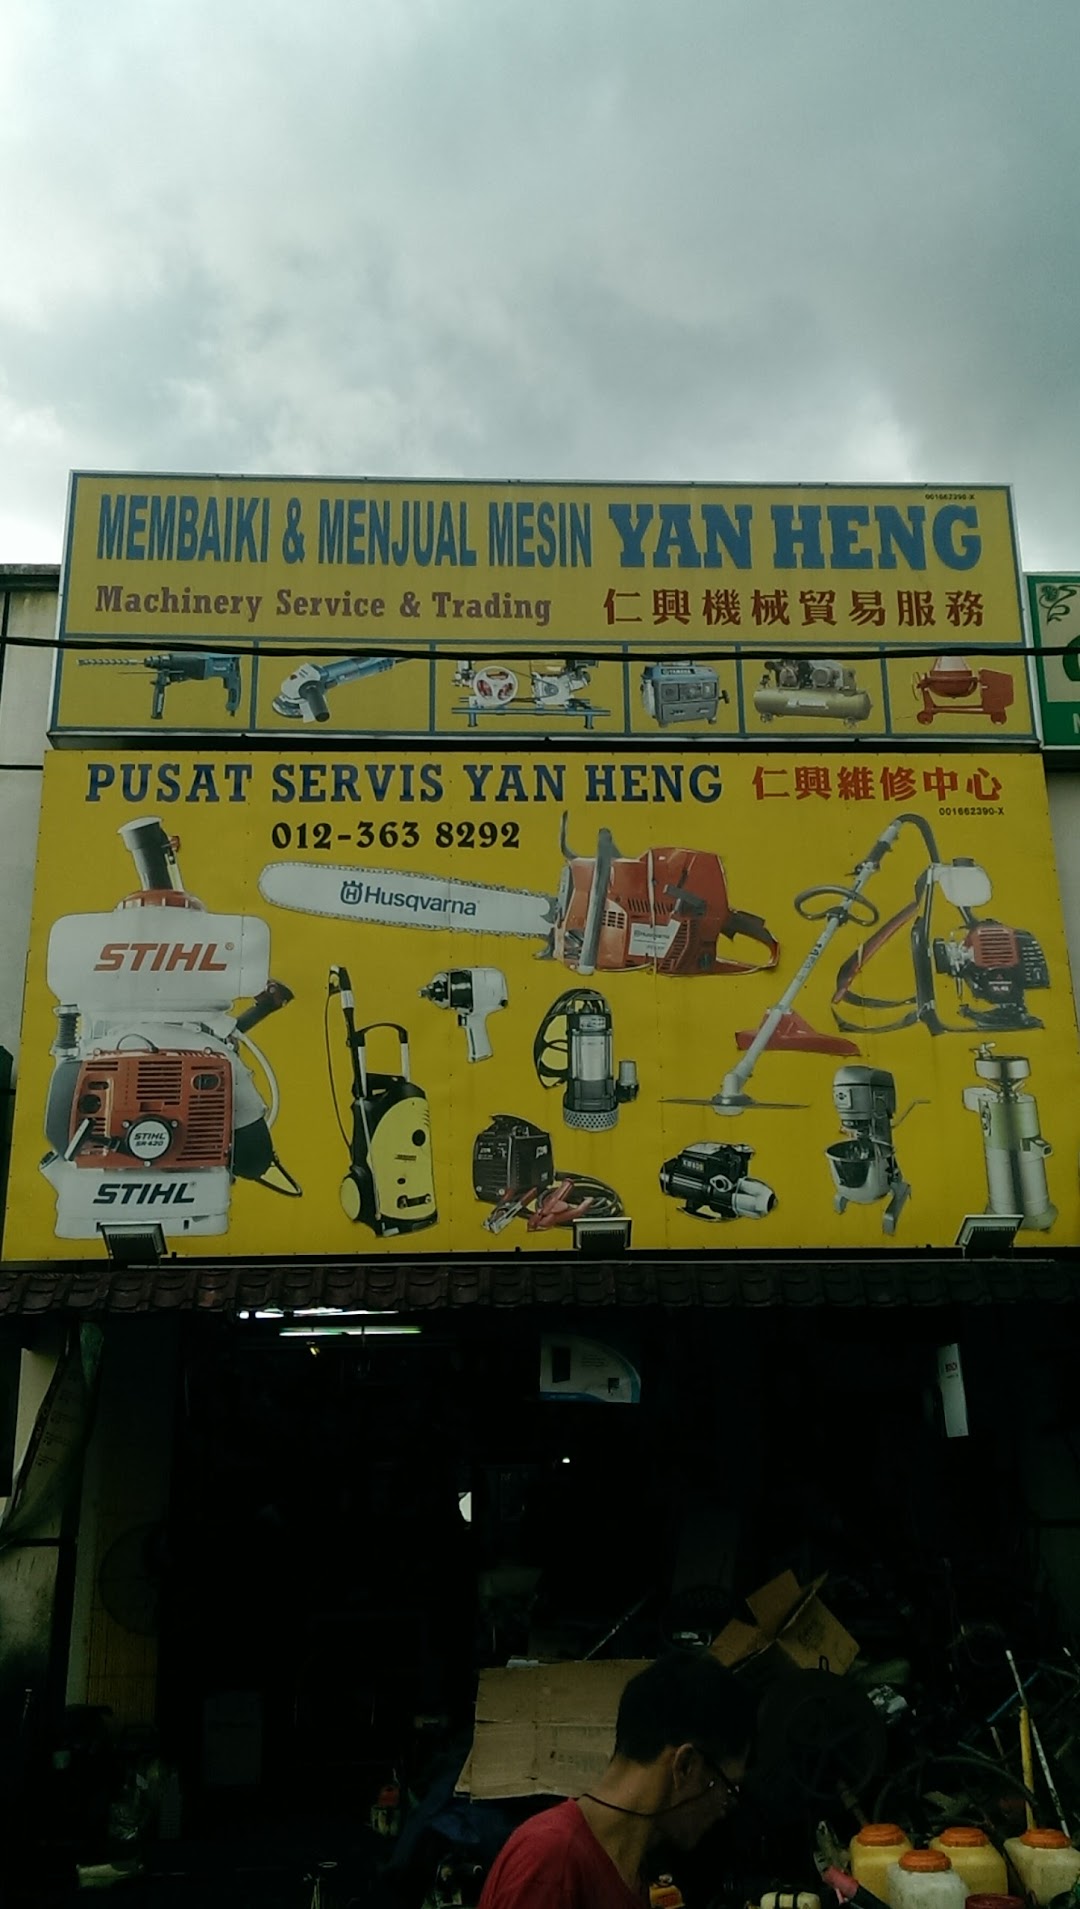 Yan Heng Machinery Service & Trading